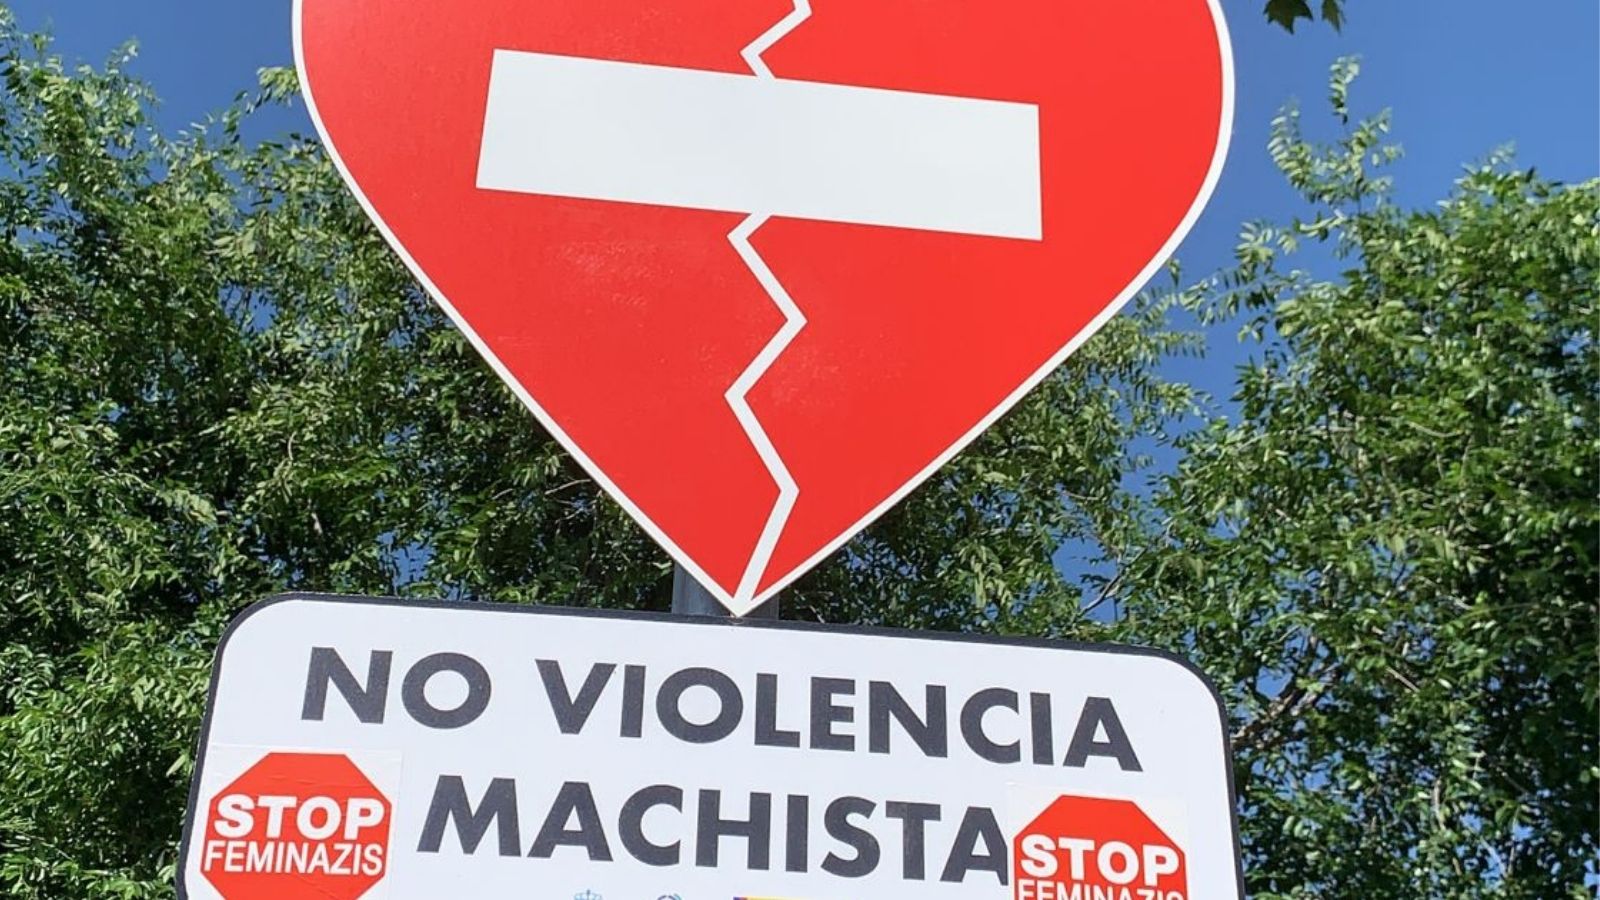 Vandalismo en algunas de las señales contra la violencia machista